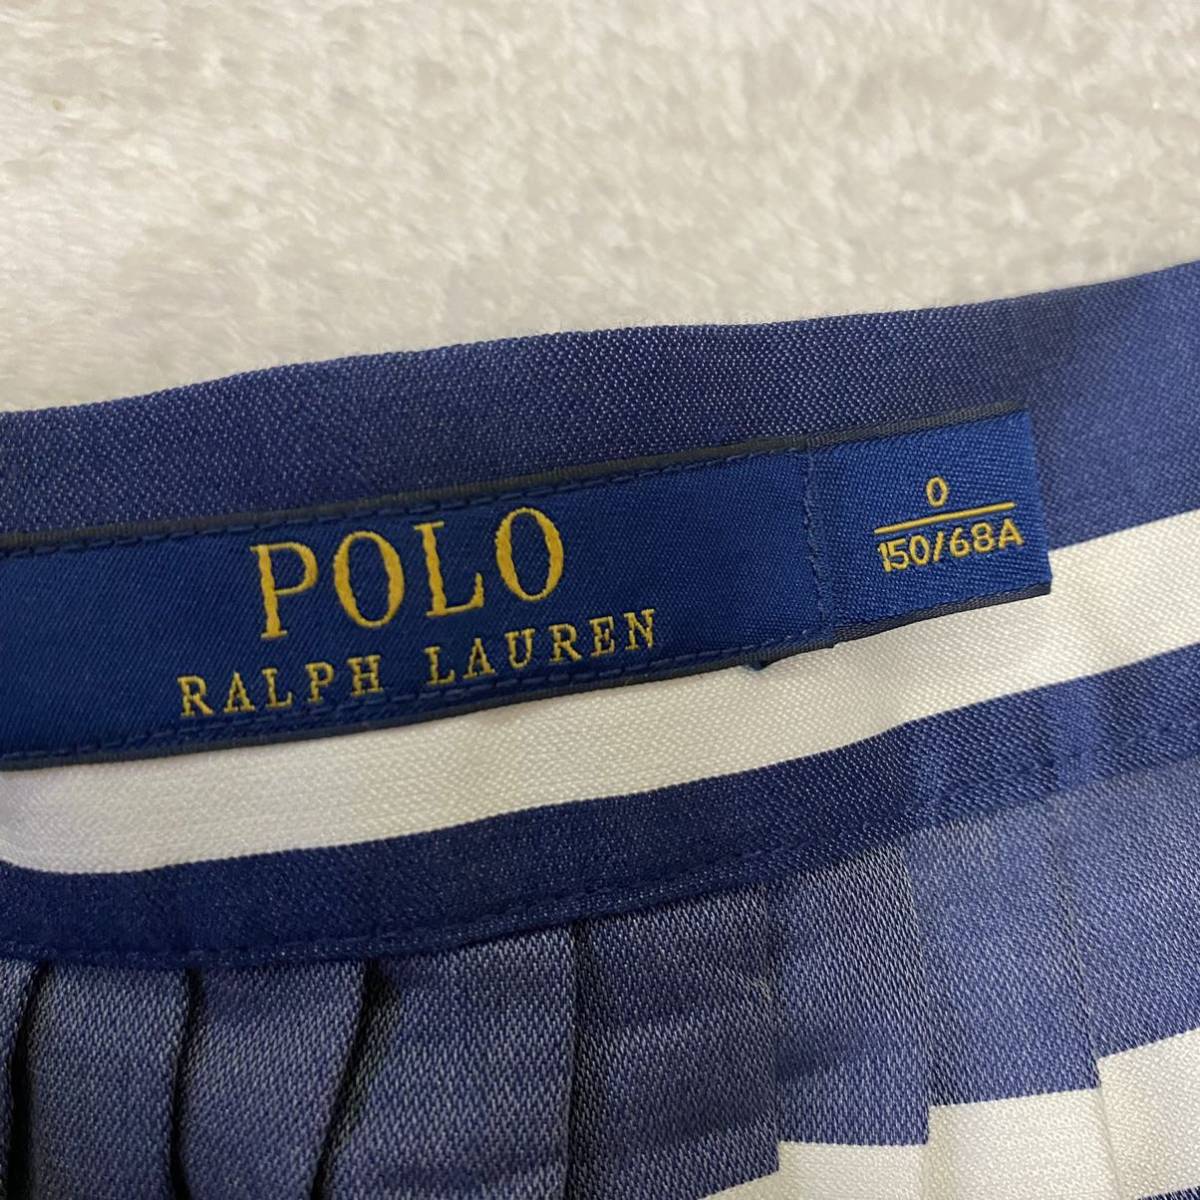 シルク混【良質生地】Polo Ralph Laurenポロラルフローレン プリーツギャザーフレアスカート 150/68A 0サイズ SMsize 紺ネイビーボーダー白_画像6